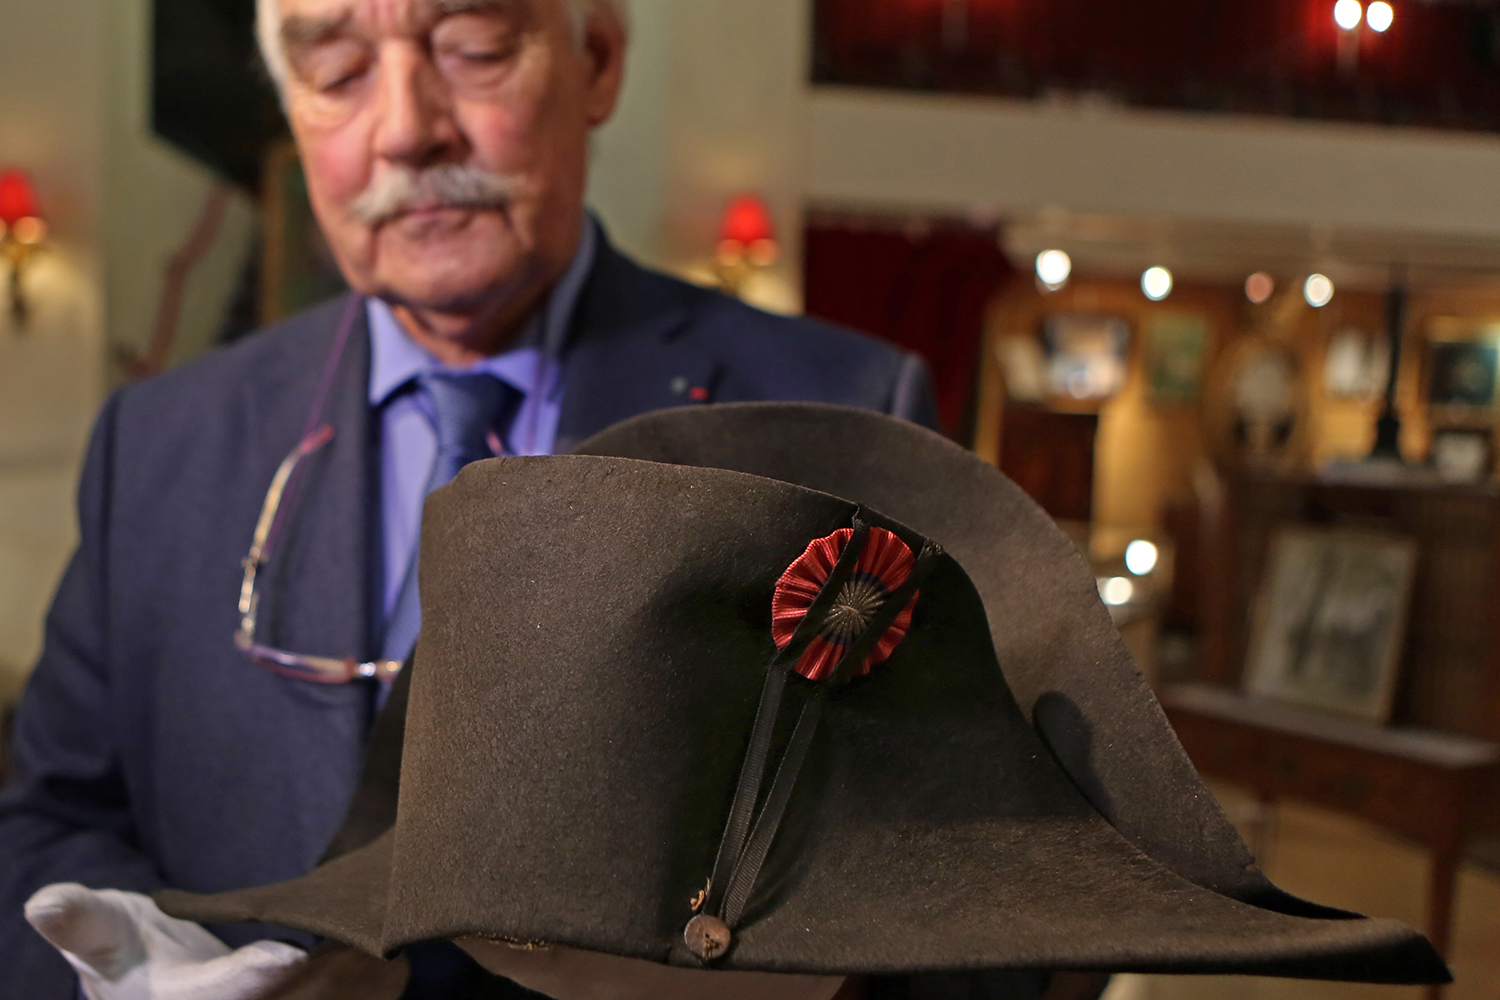 El sombrero de Napoleón Bonaparte será subastado por 500,000 euros